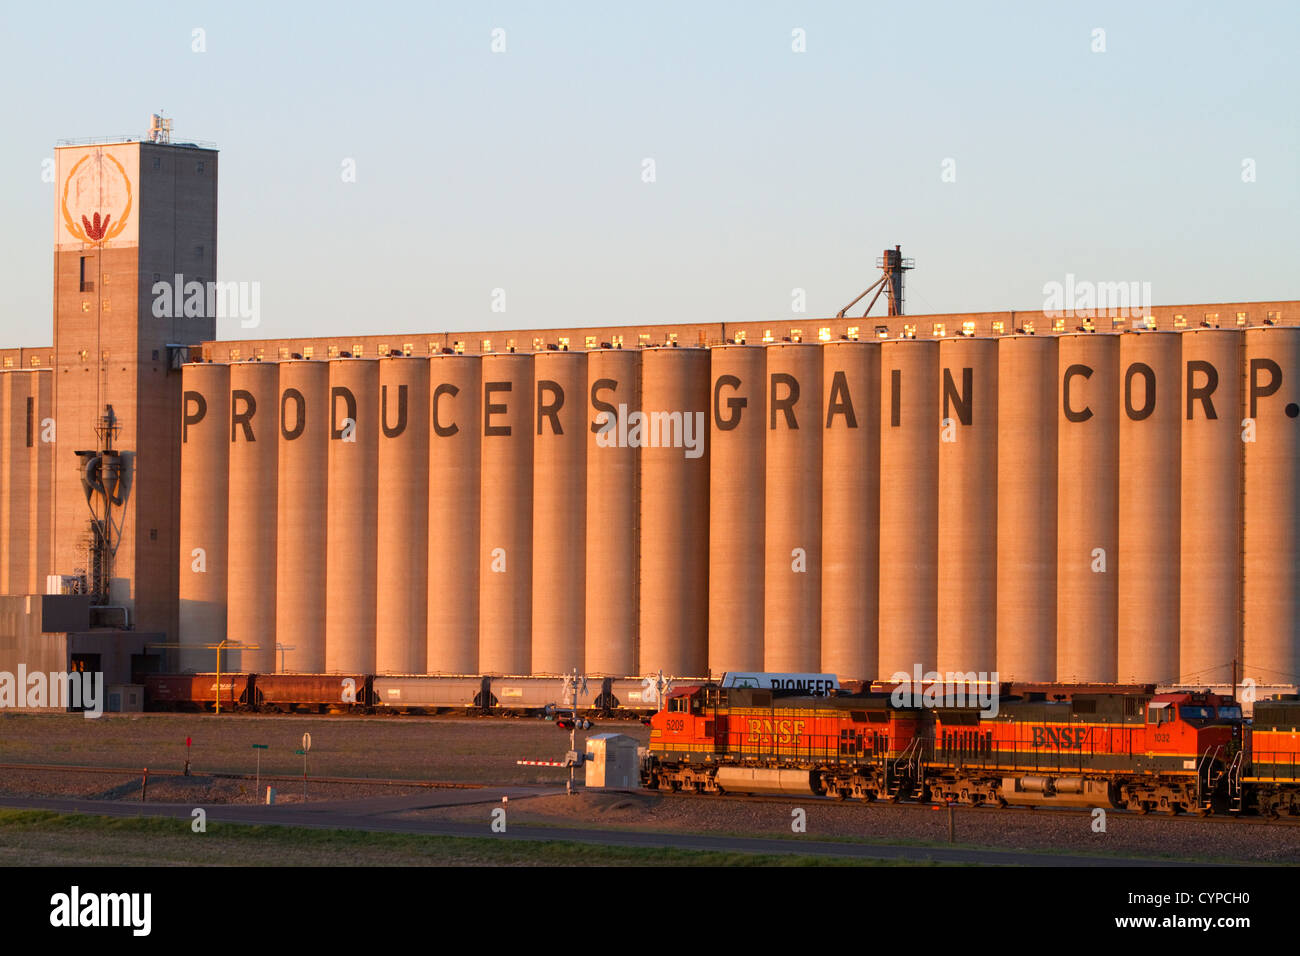 BNSF convoglio ferroviario di fronte all'Agri produttori Chicco Corp elevatori della granella a Plainview, Texas, Stati Uniti d'America. Foto Stock